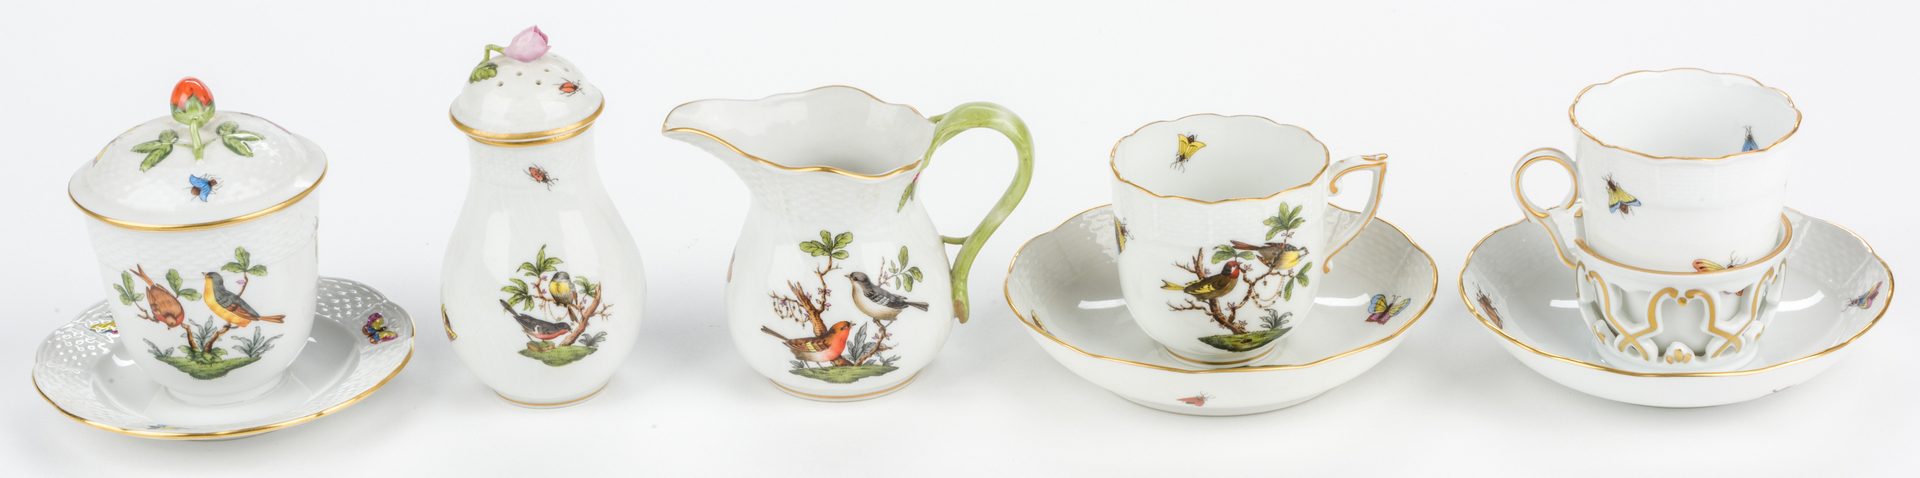 Lot 321: Herend Rothschild Bird Porcelain Dinnerware, 15 pcs